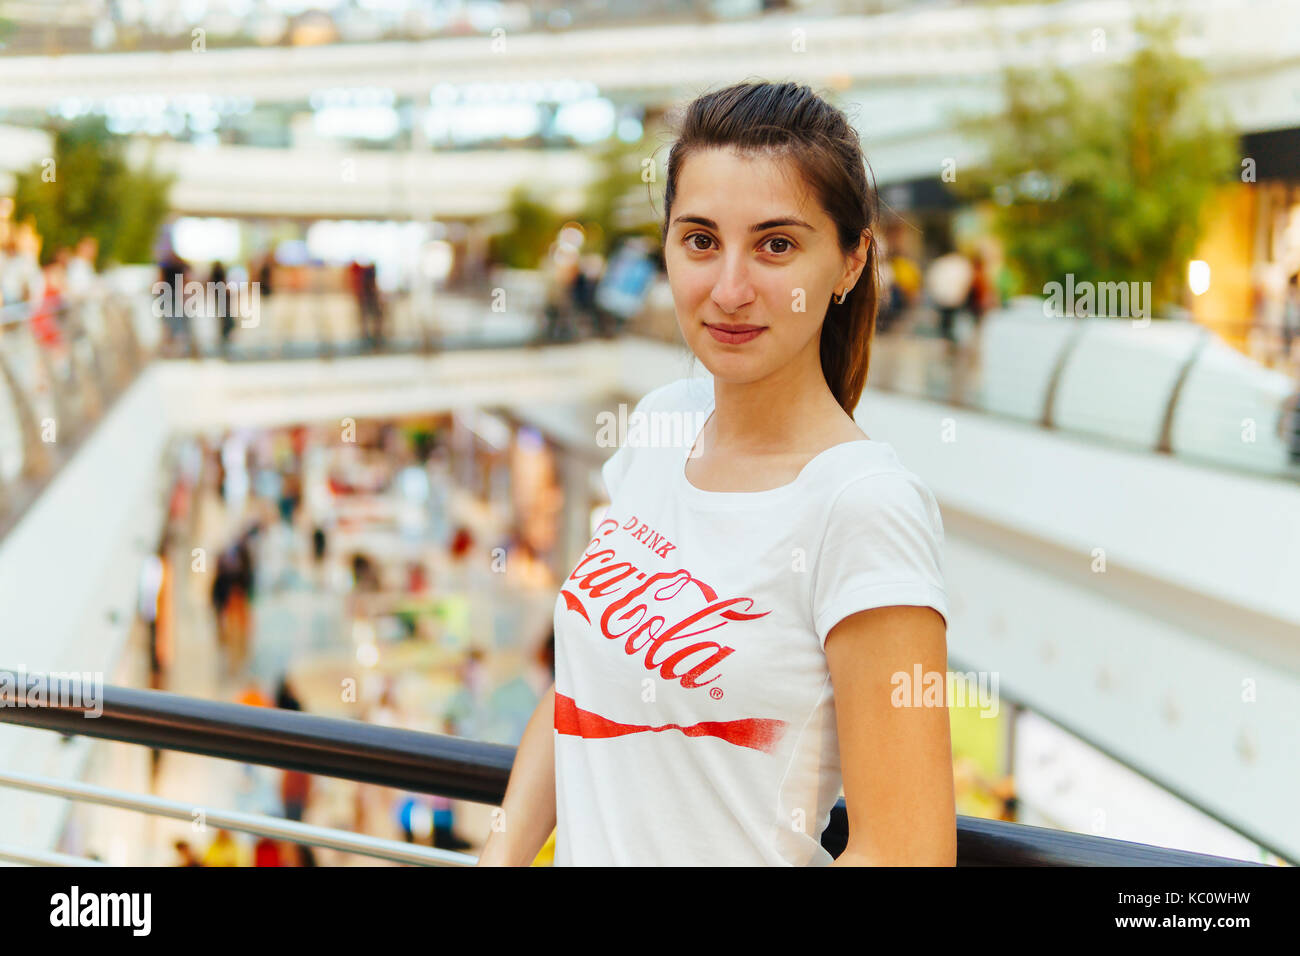 Lisbonne, Portugal - 10 août 2017 : young girl wearing white shirt avec 'drink coca-cola" pour ouvrir un centre commercial moderne. Banque D'Images